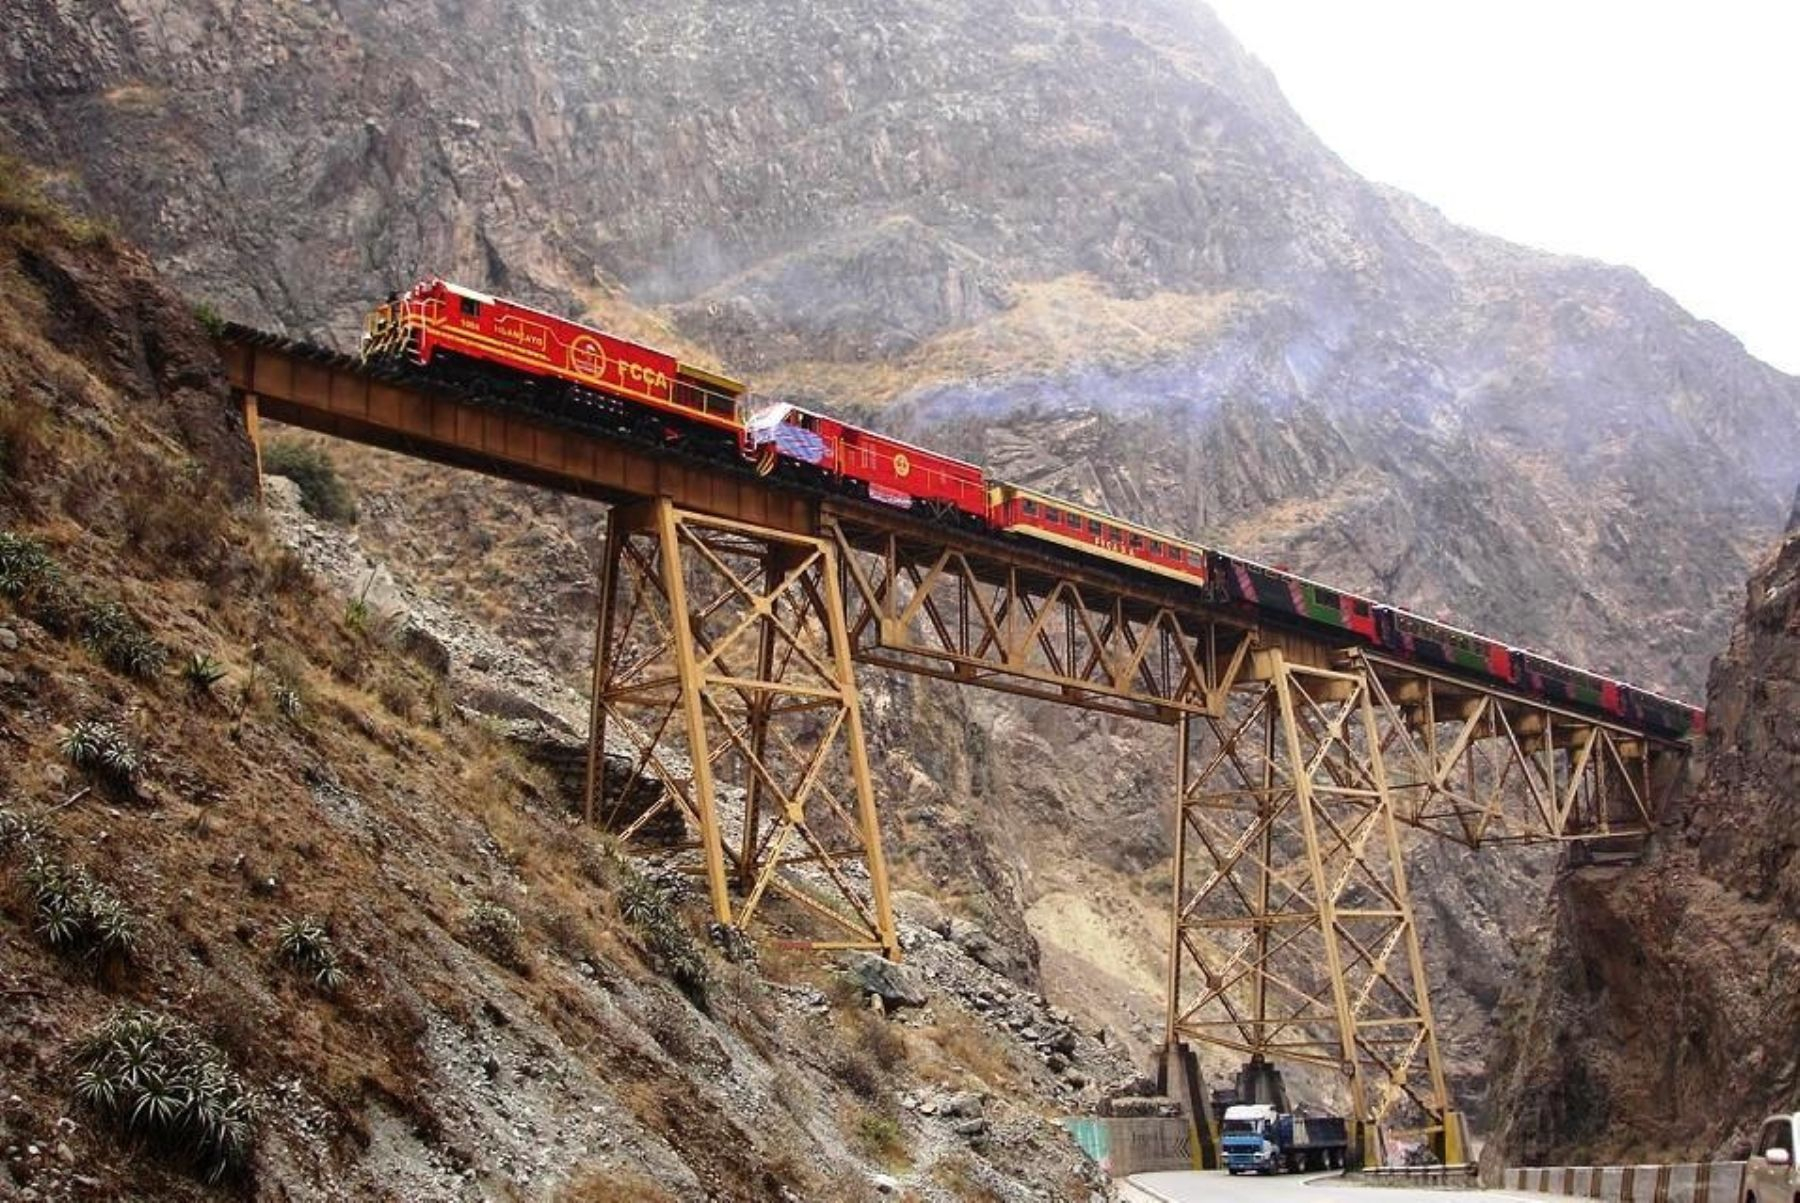 tren macho estará listo en 2029: 3 consorcios competirán para modernizar ferrocarril andino